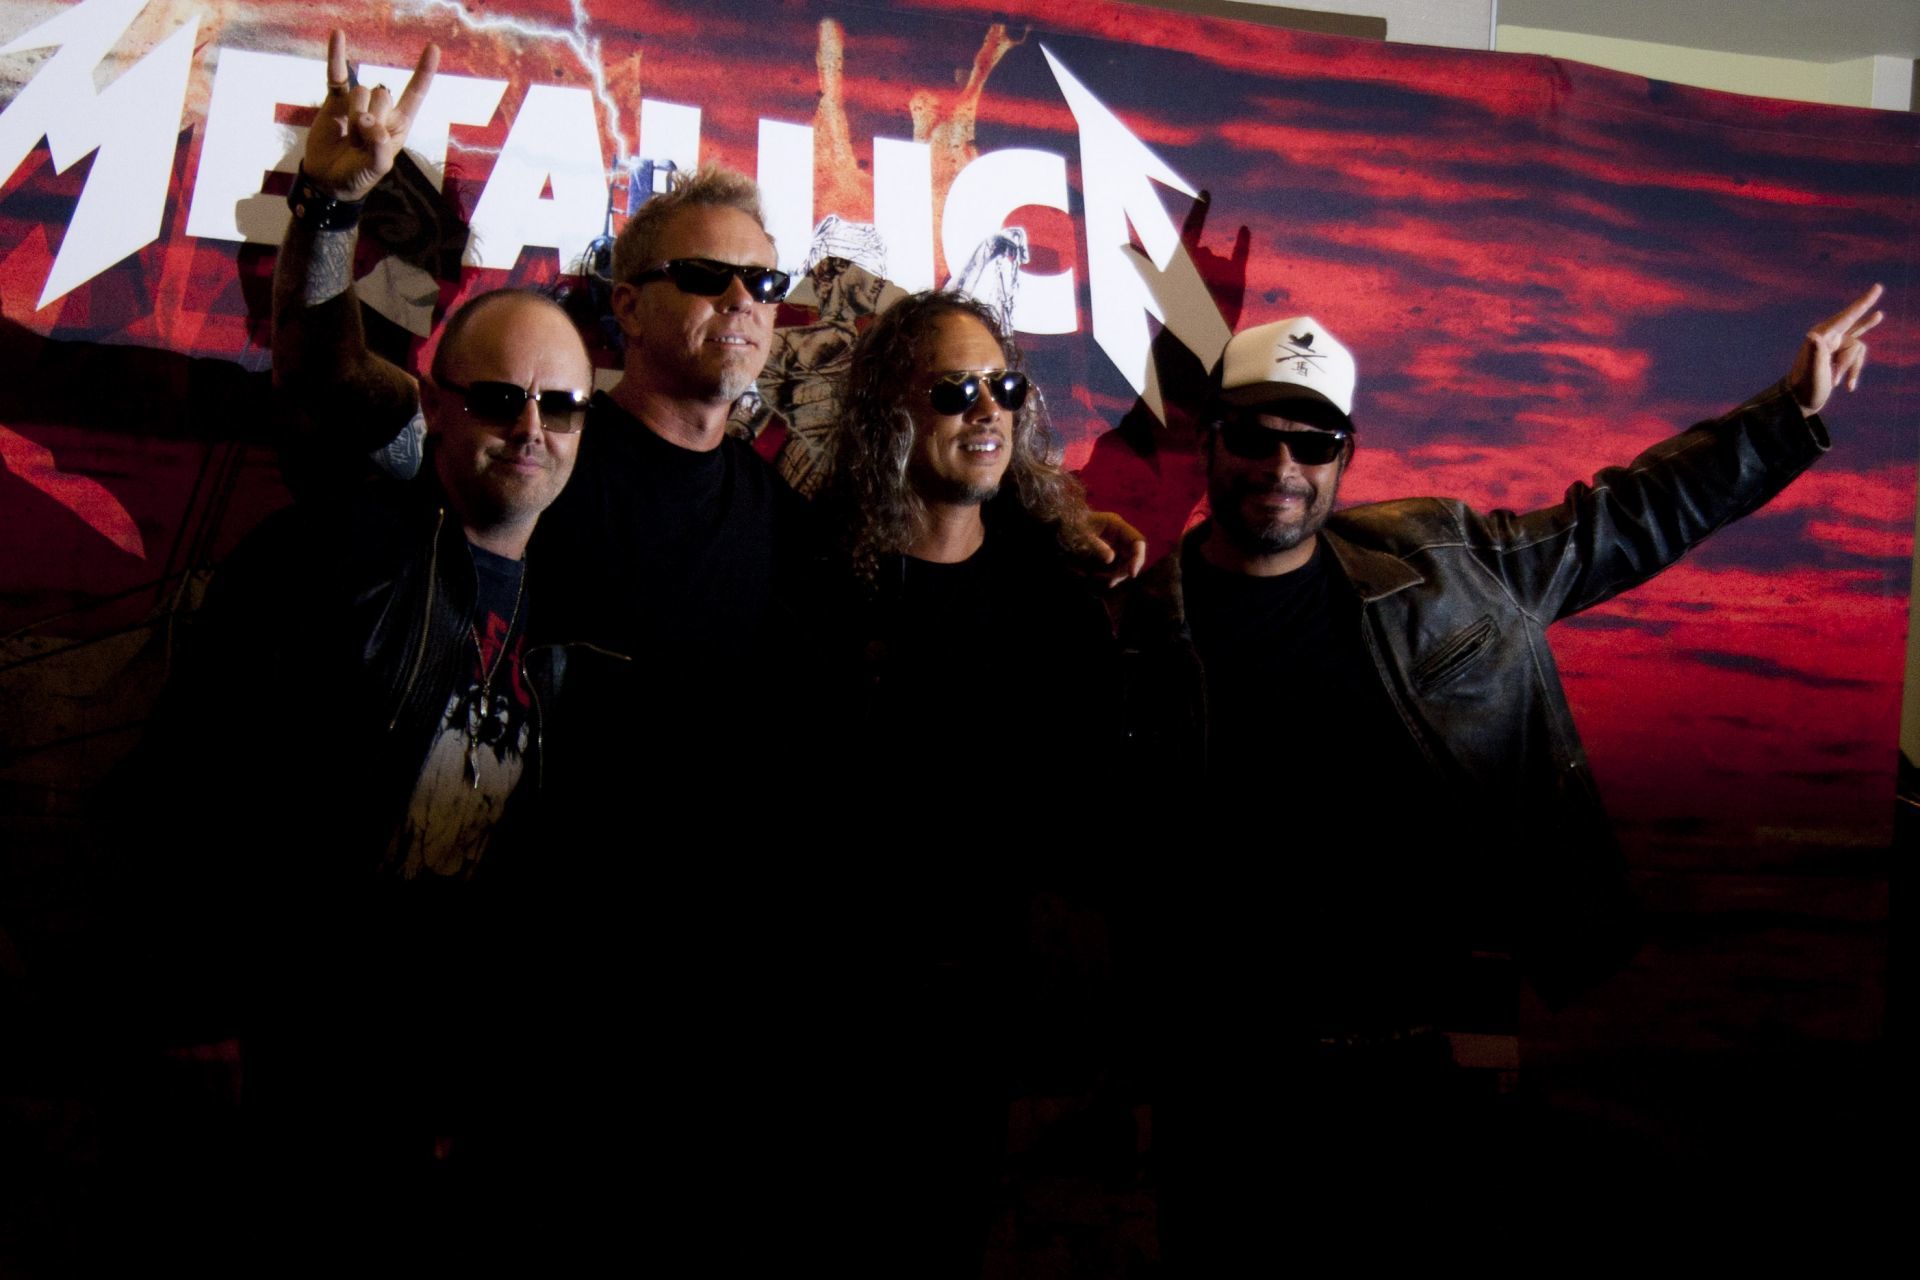 Metallica ha causado una gran polémica luego de aparecer en la serie Stranger Things a través de uns de sus más famosas canciones "Master Of Puppets"

FOTO: CUARTOSCURO.COM